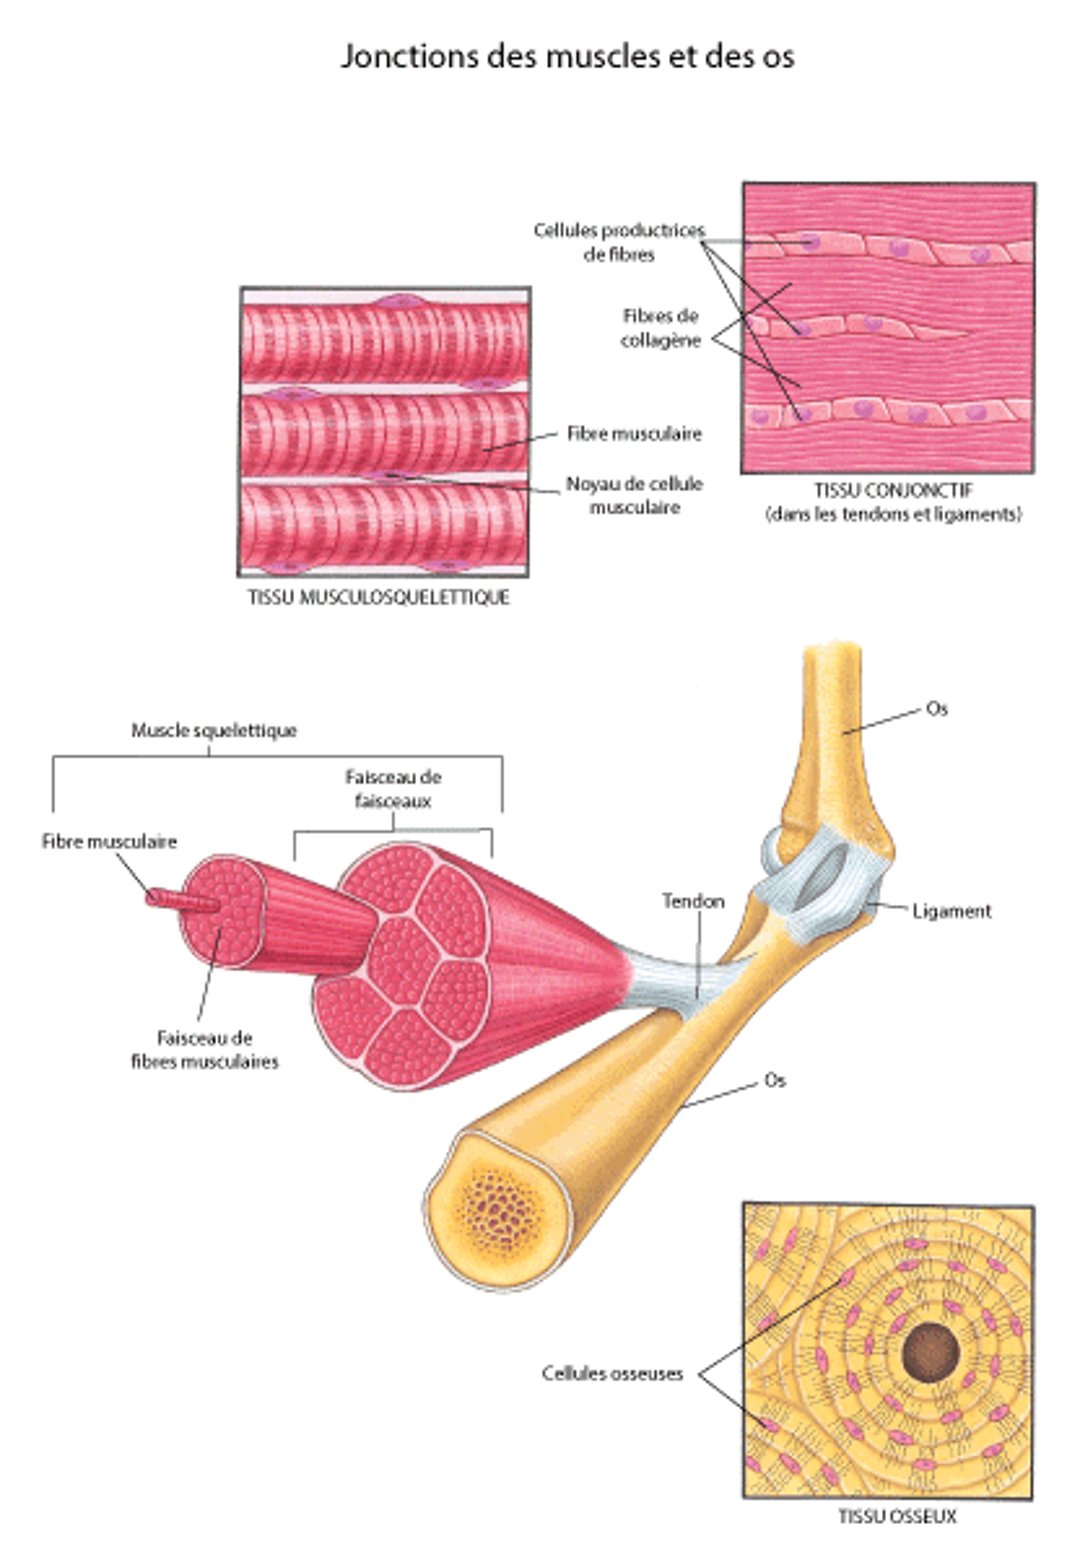 Muscles et autres tissus du système musculosquelettique